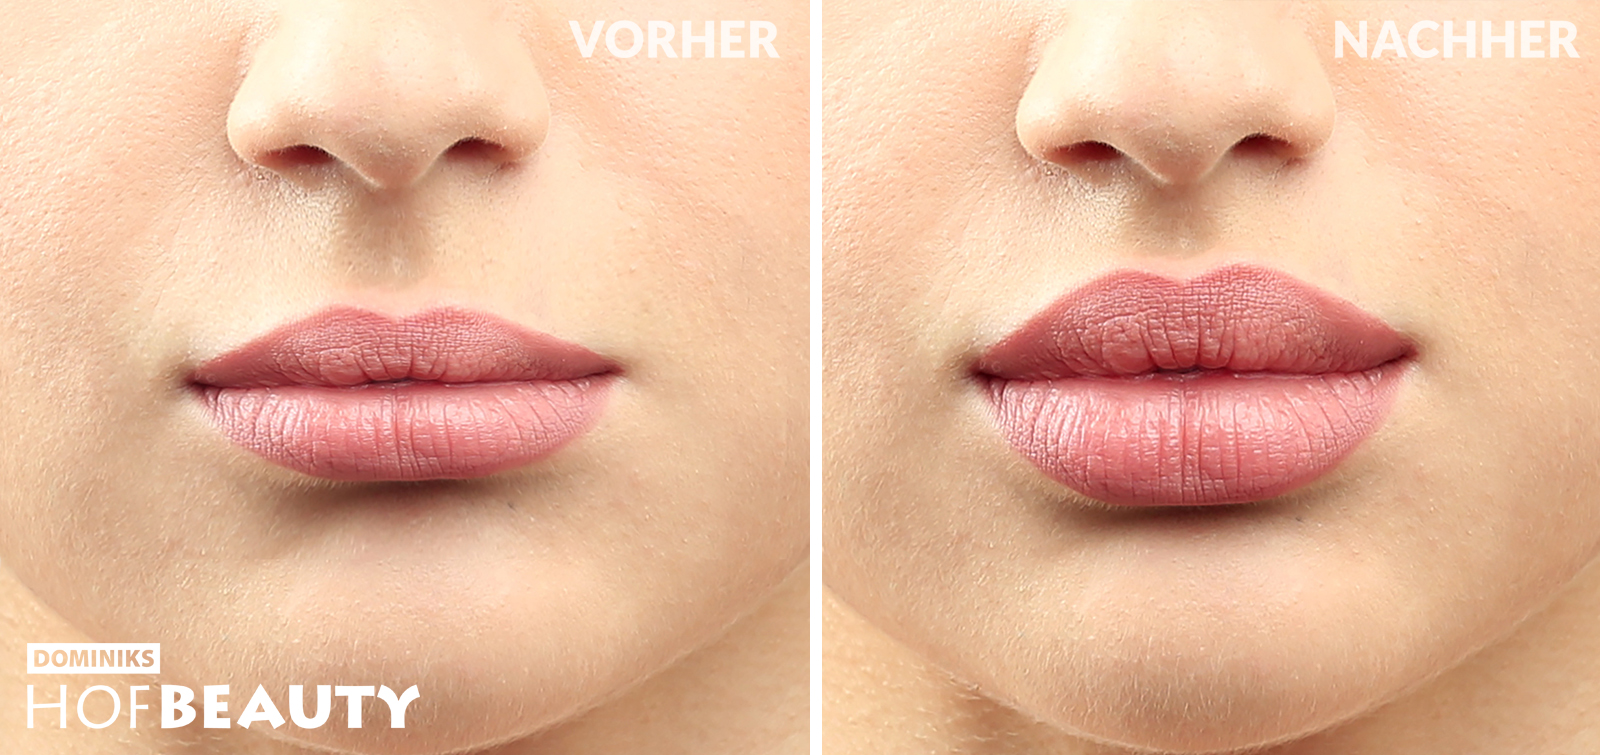 Hyaluron Behandlung Lippen aufpolstern_vorher-nachher_Kosmetikstudio HofBeauty